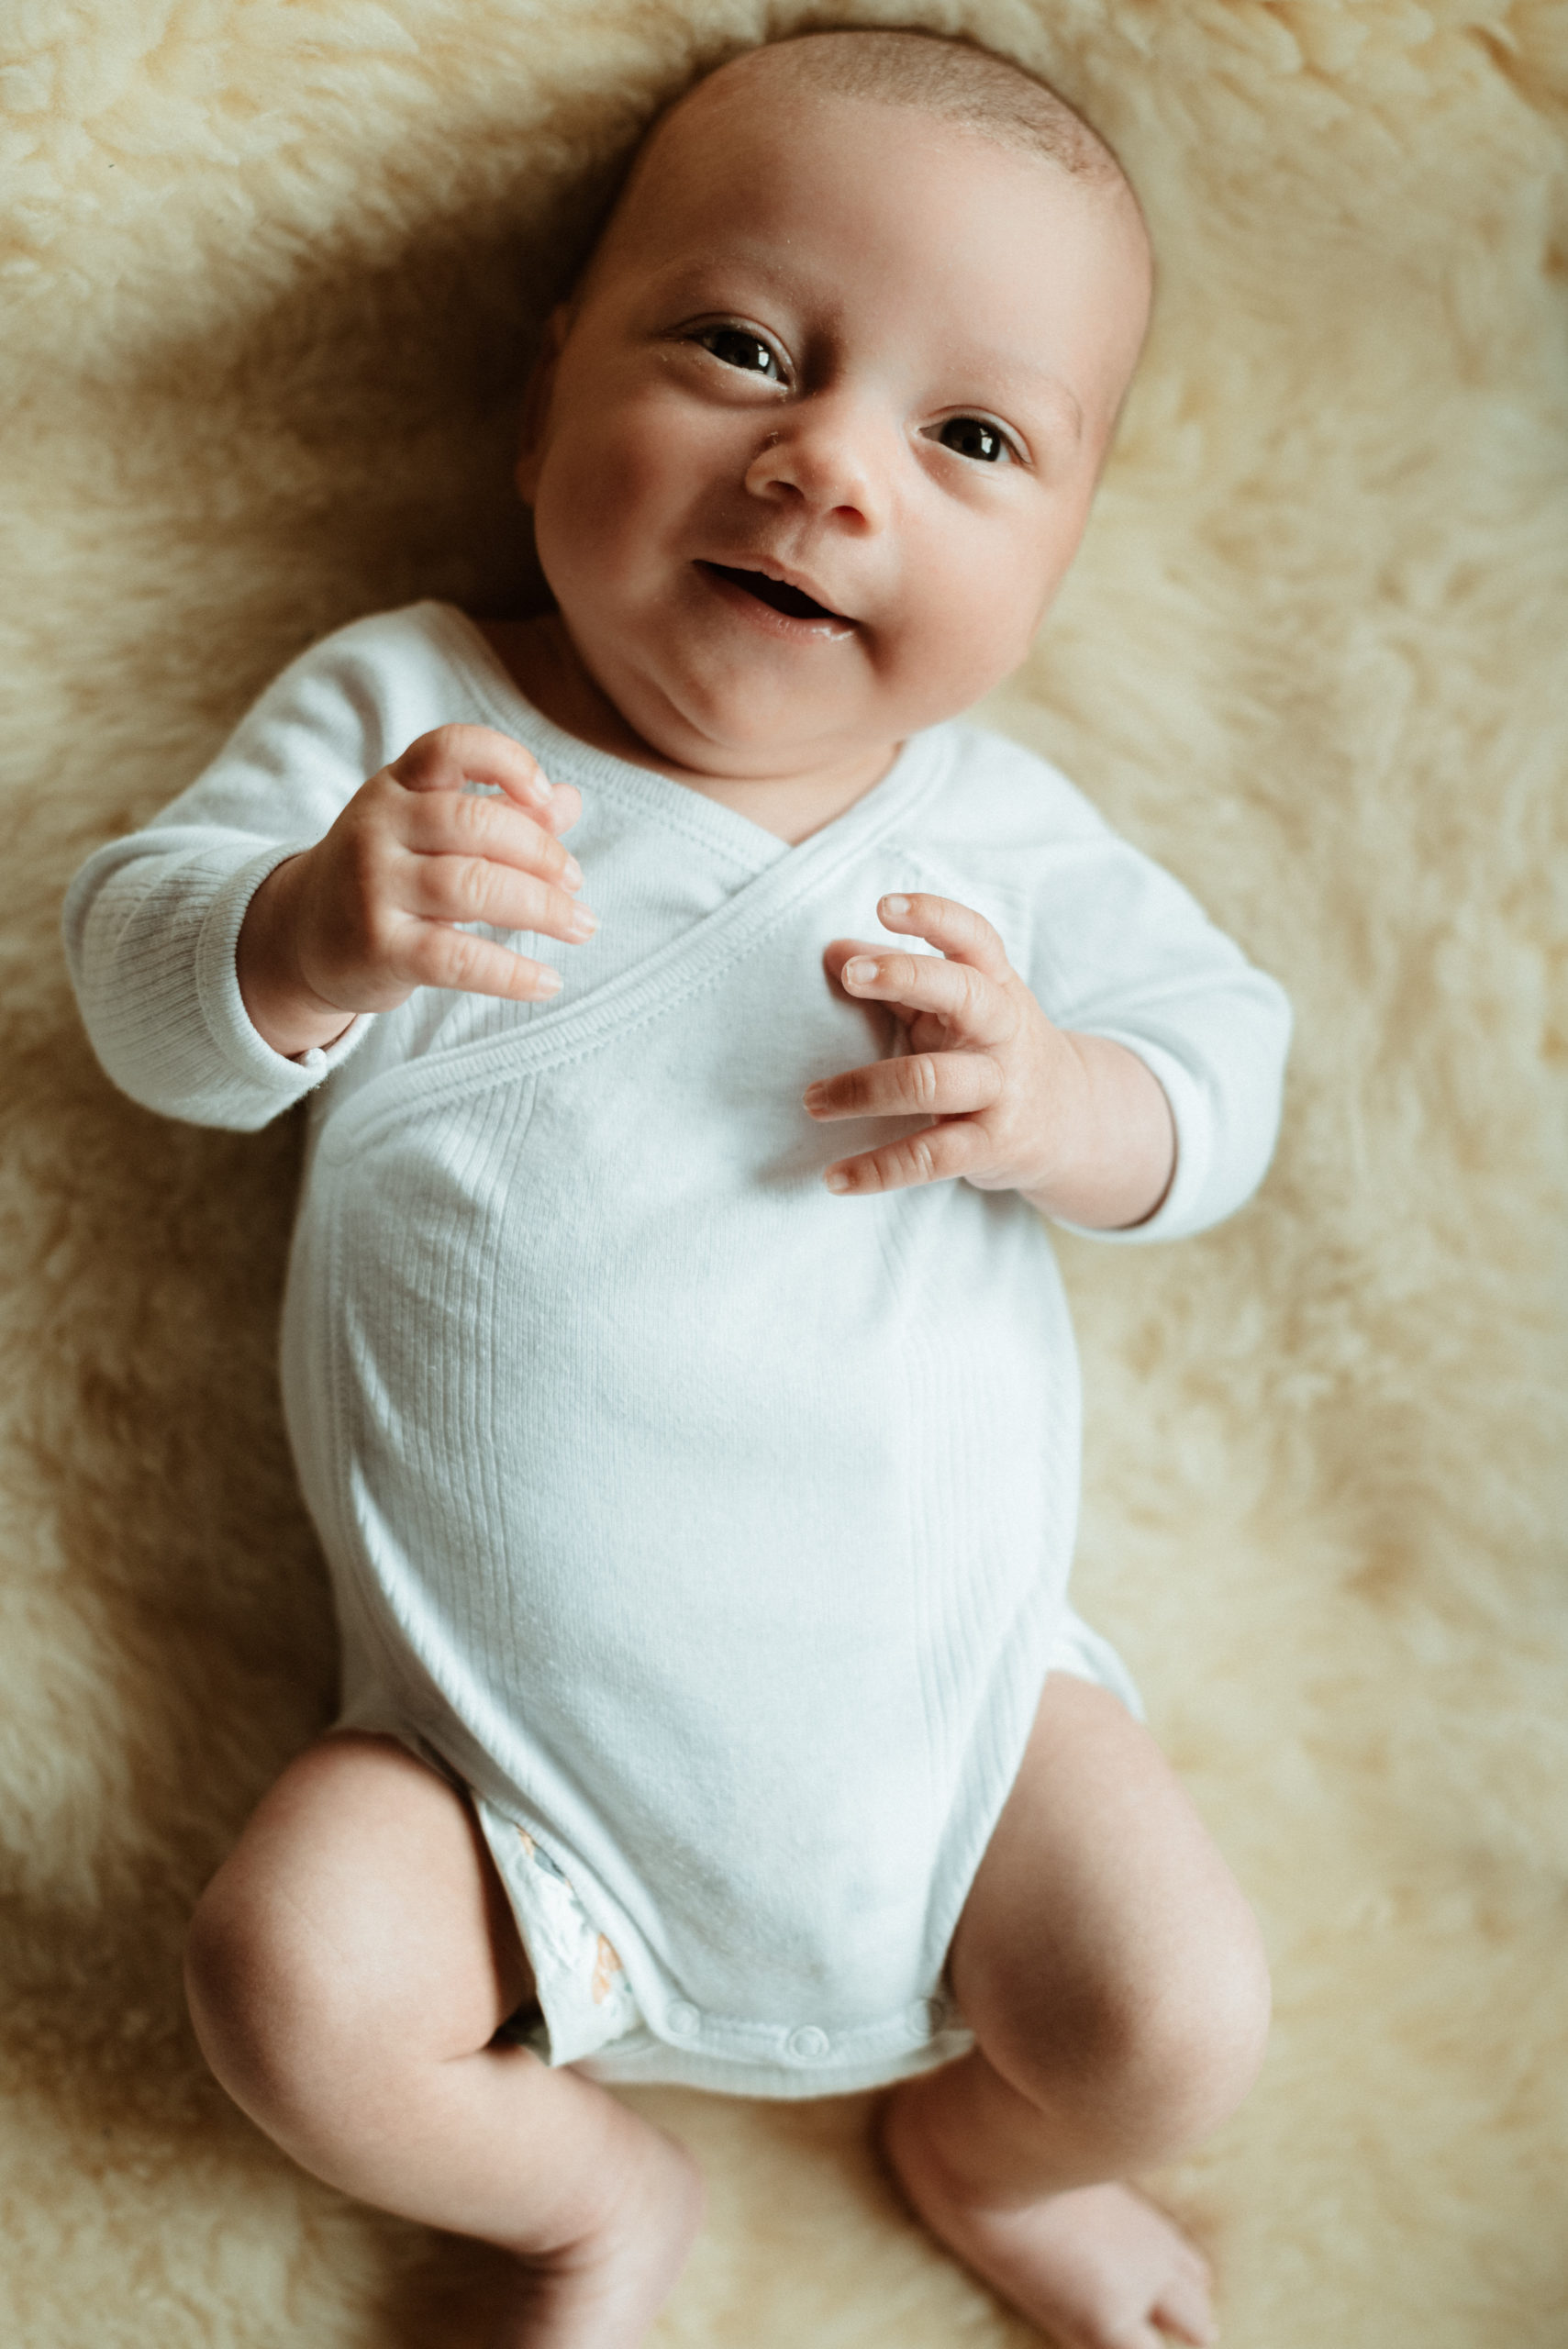 Wunderschöne Einzelaufnahme des Babies, wie es lächelnd in die Kamera schaut beim Neugeborenen Fotoshooting.